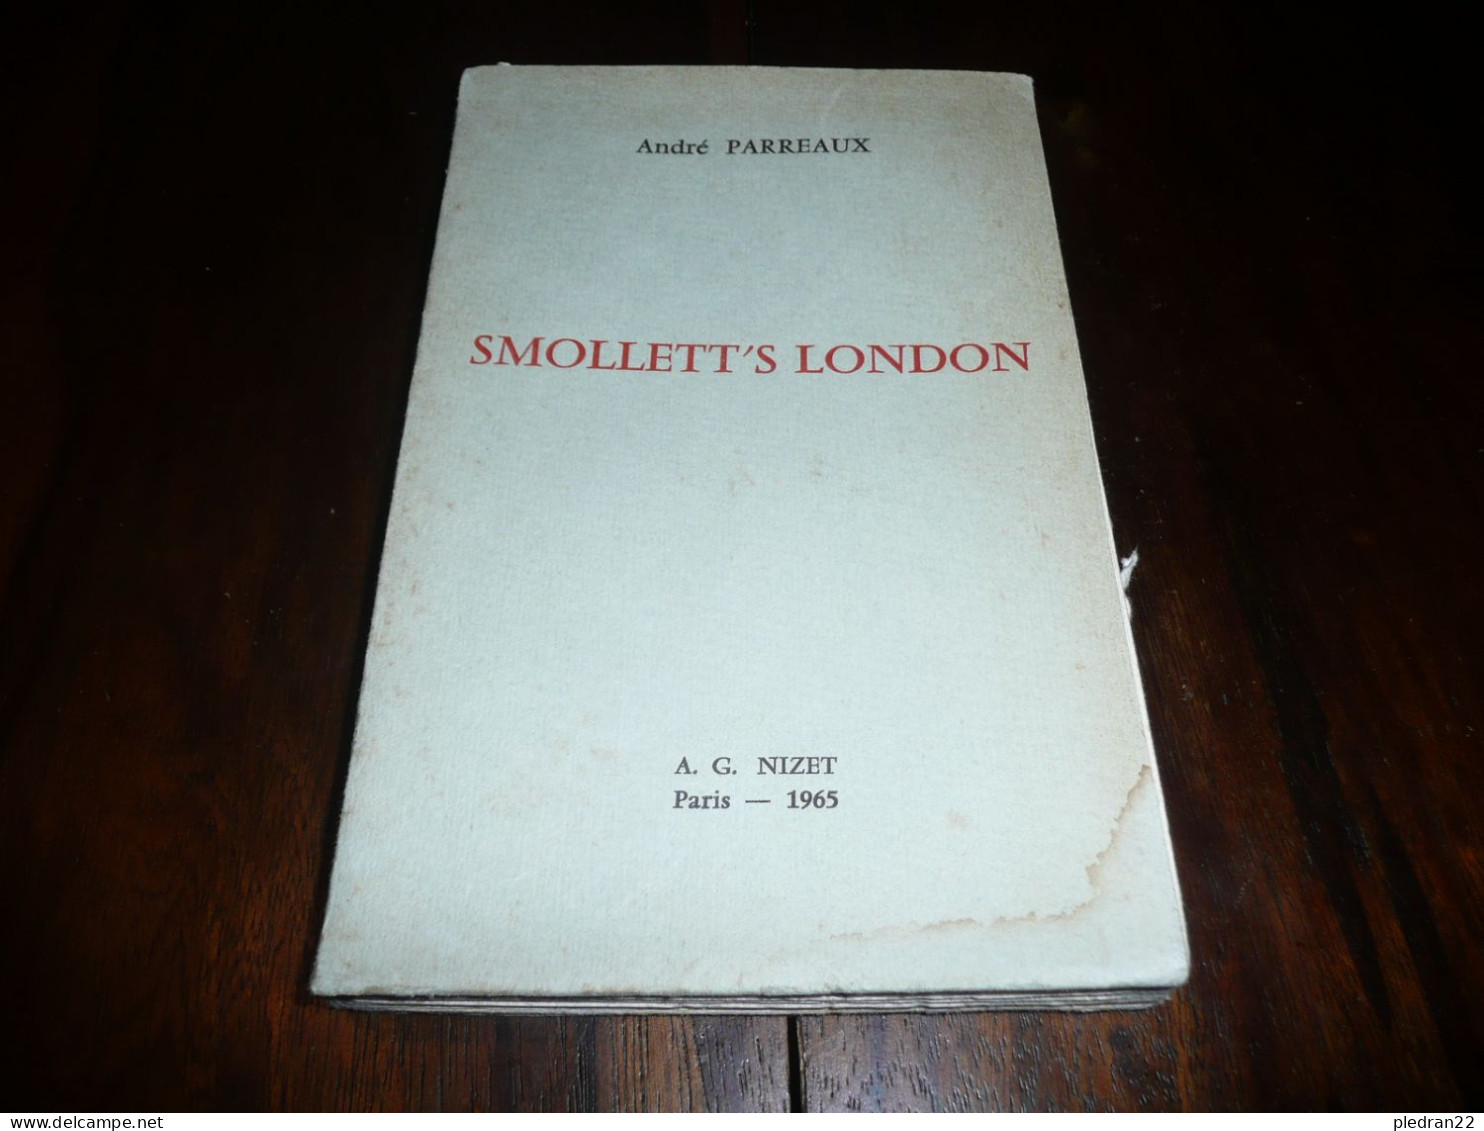 ANDRE PARREAUX SMOLLETT'S LONDON SERIE DE COURS DE LITTERATURE A L' UNIVERSITE DE PARIS EDITIONS NIZET 1965 - Cultural